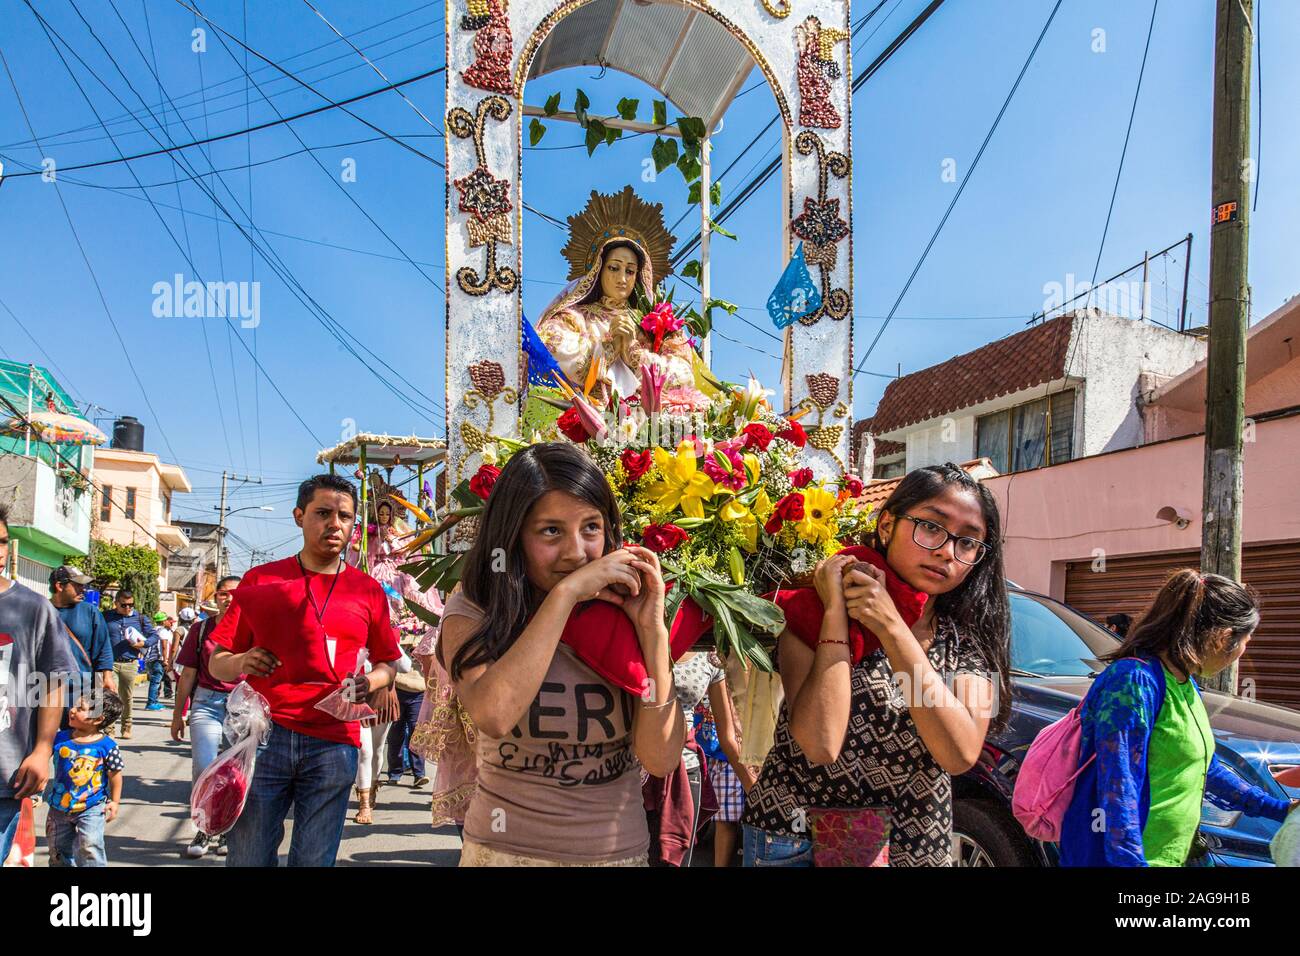 Mexico Federal District Mexico City Xochimilco Xaltocán Fair of the Virgin of Sorrows Stock Photo